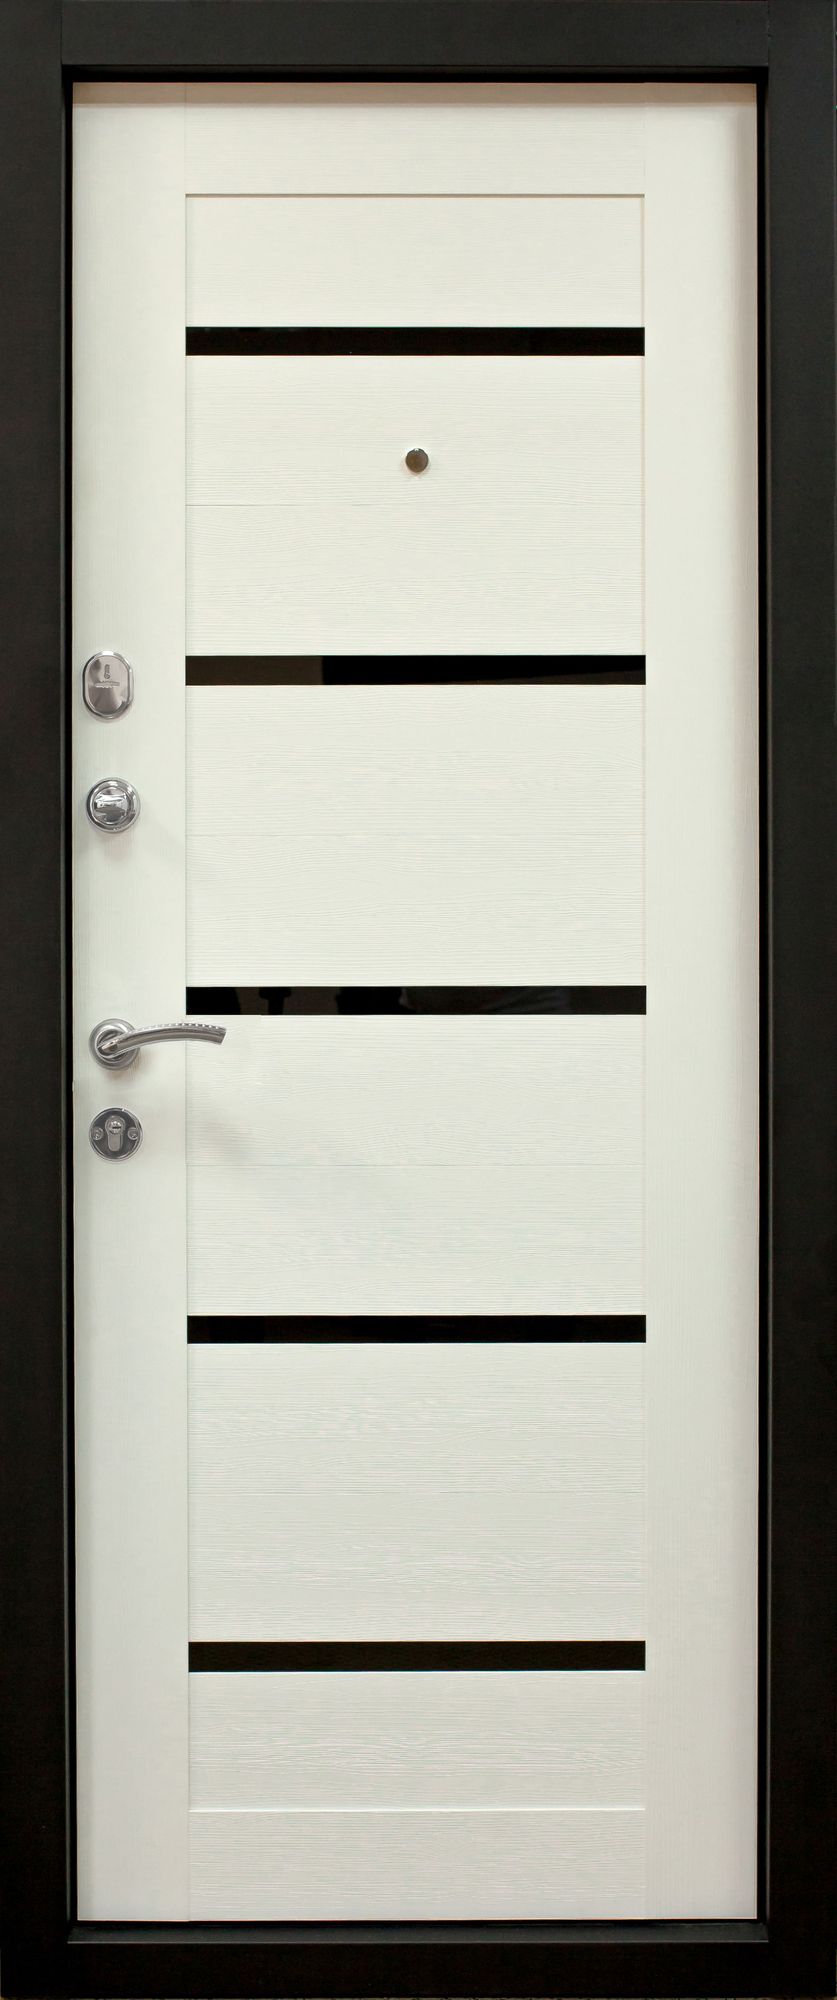 Вхідні двері ПK-180/161 EЛІT Beнгe горизонт темний / Царга біла текстура